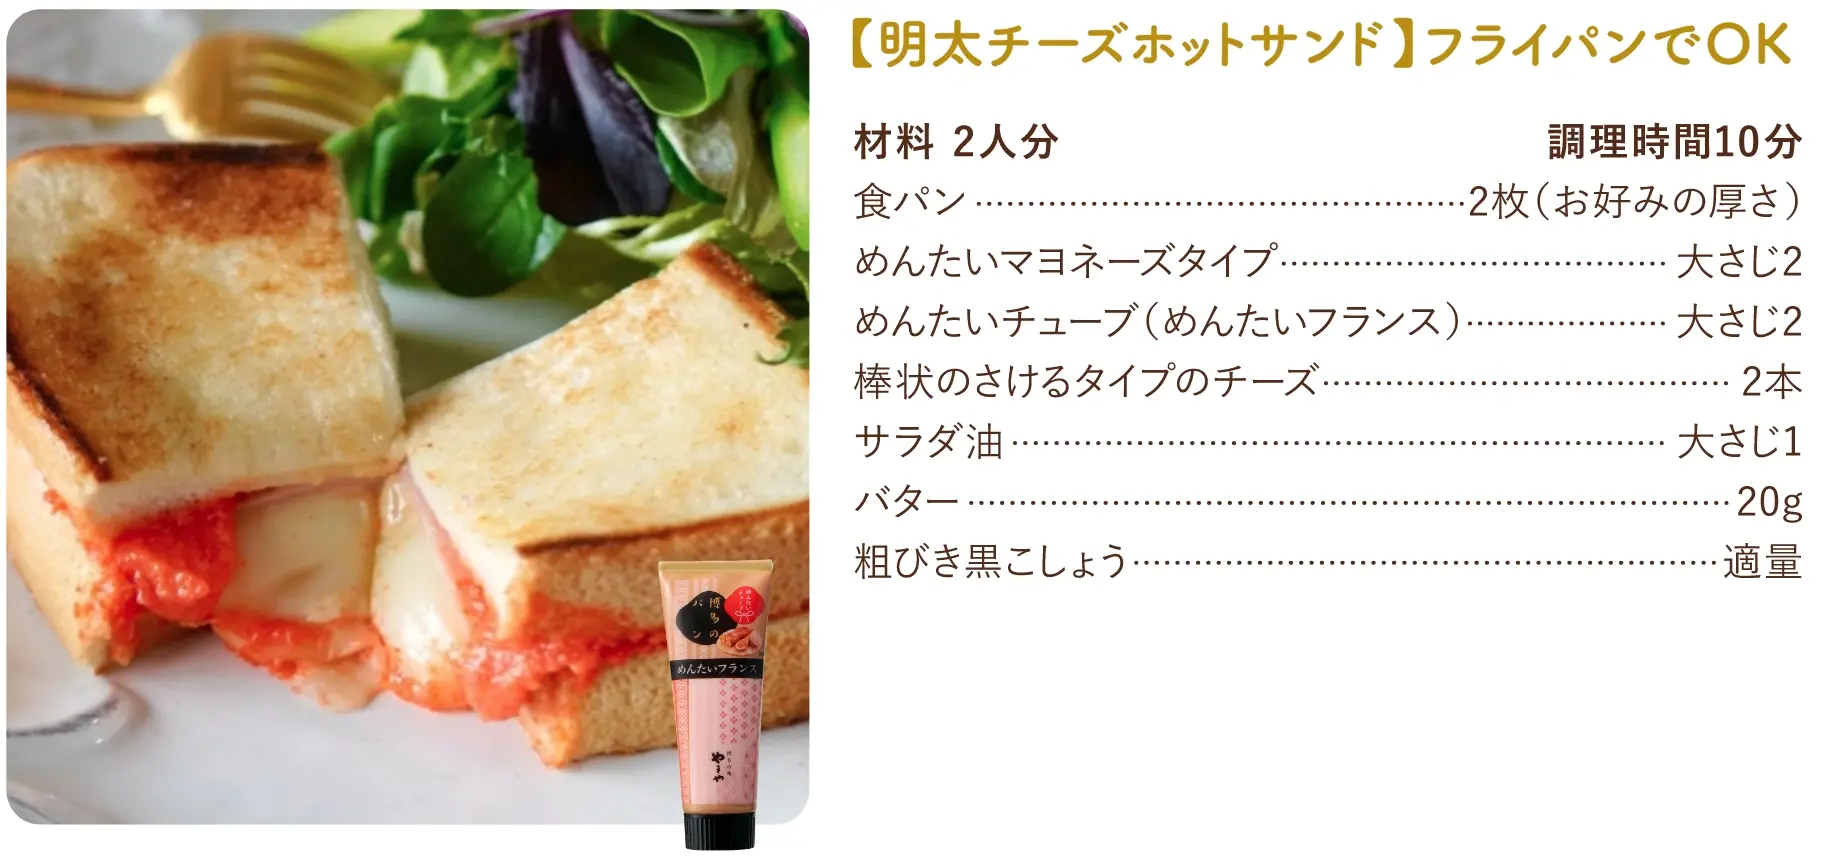 【明太チーズホットサンド】フライパンでOKのレシピ